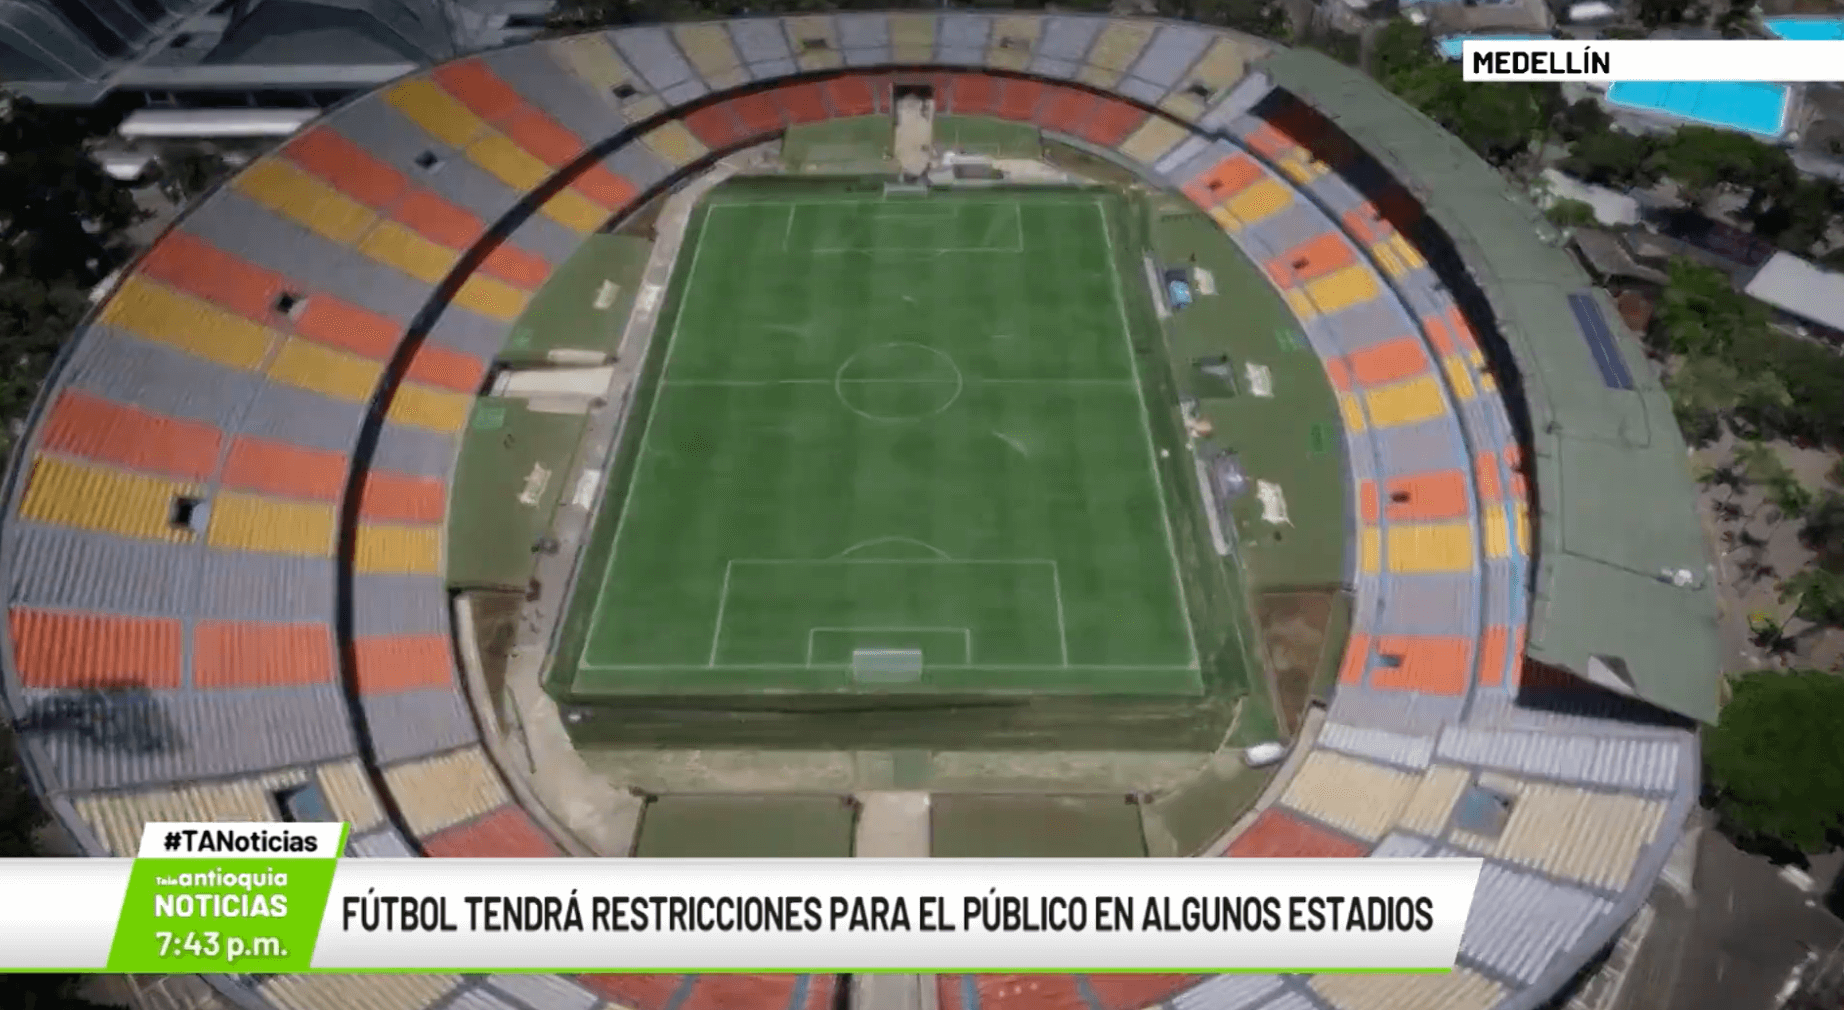 Fútbol tendrá restricciones para el público en algunos estadios